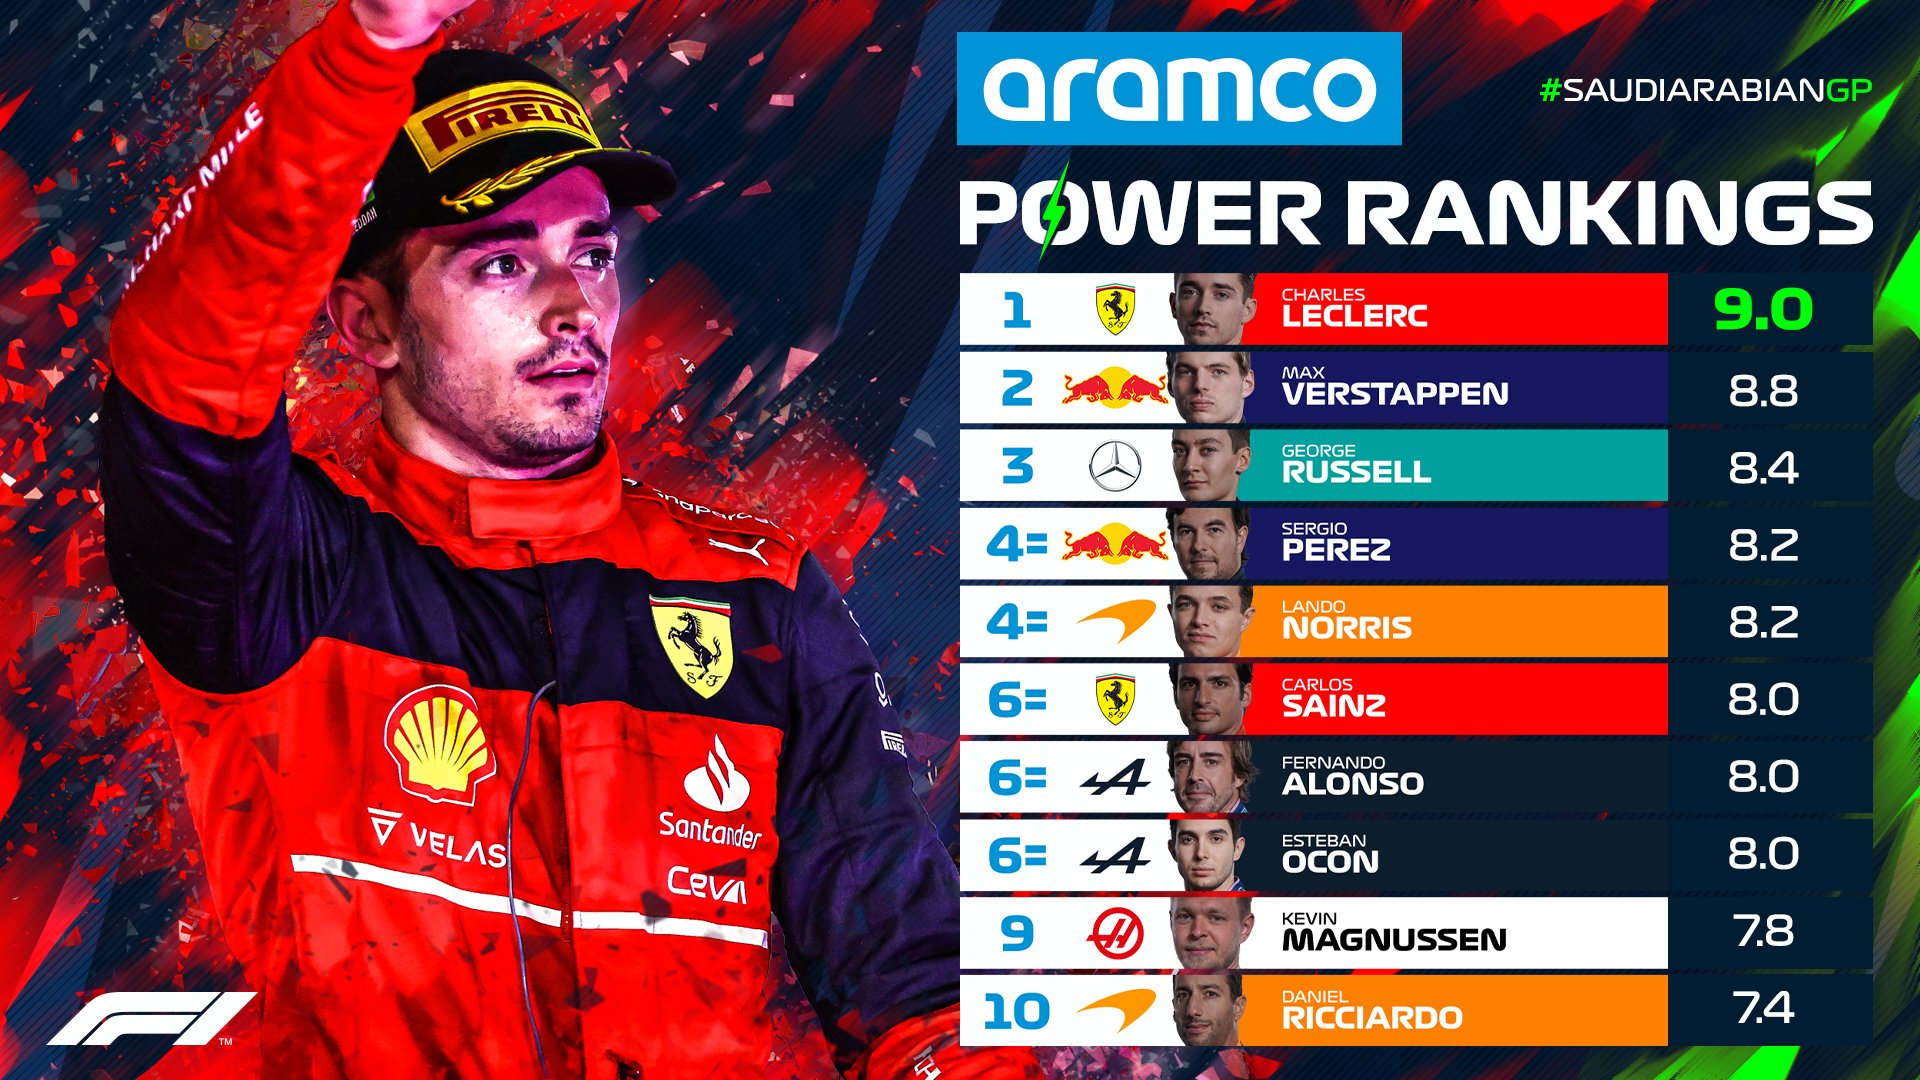 Power Rankings del Gran Premio de Arabia Saudita (Formula 1)